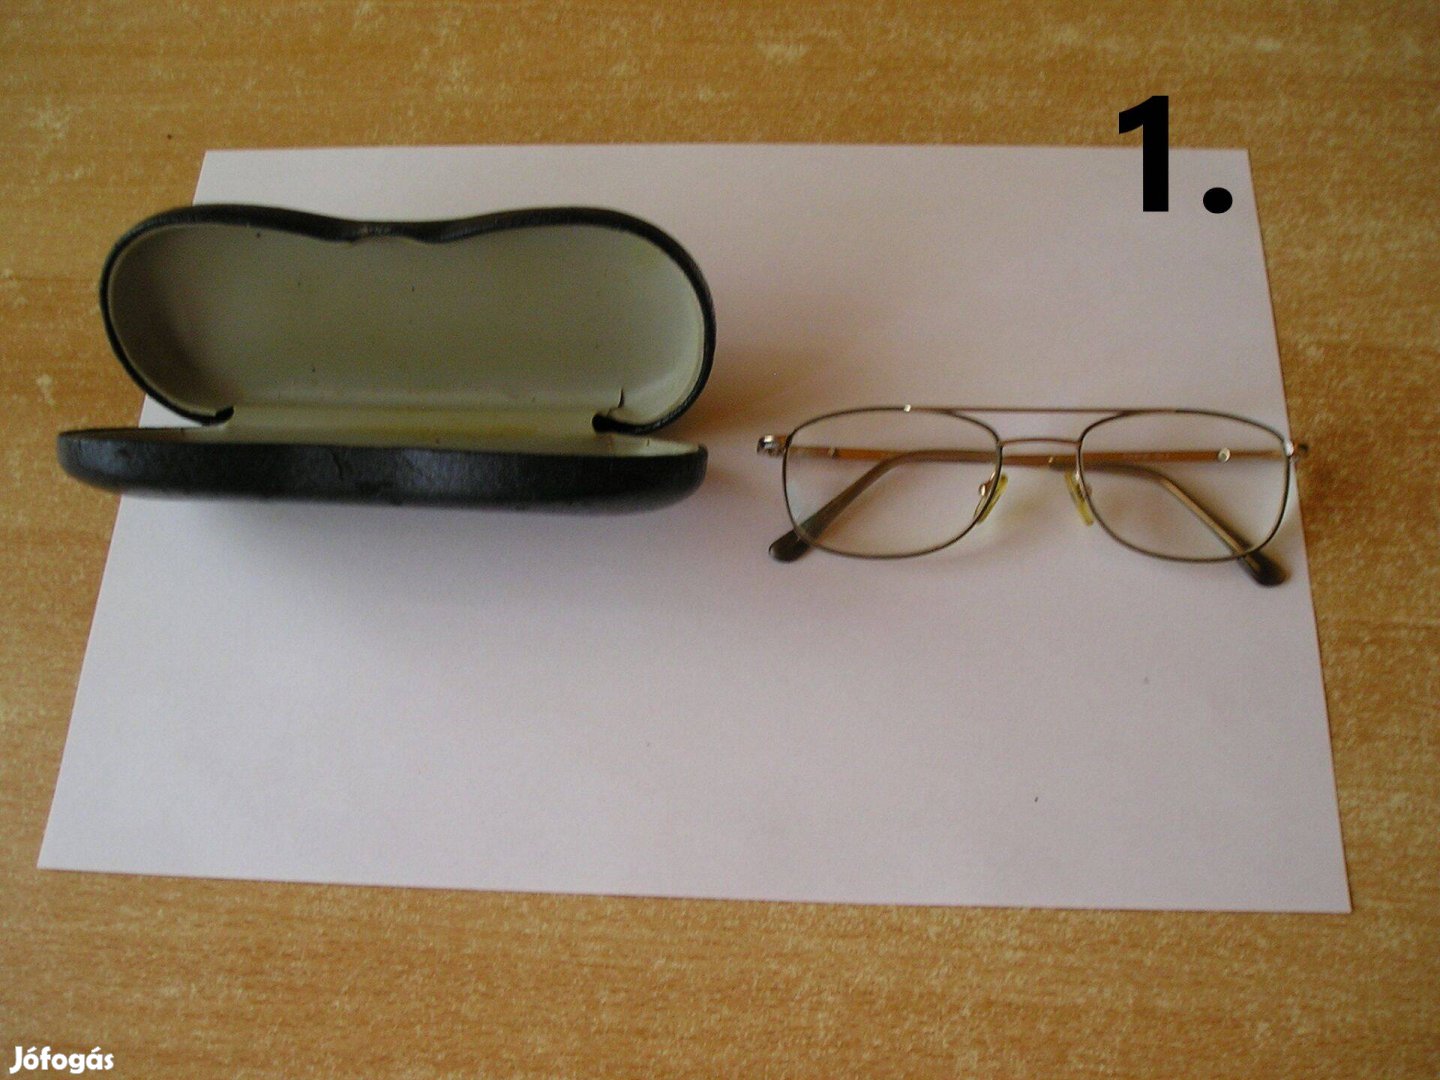 Olvasószemüveg tokkal, dioptriás - 2 db (férfi és női)